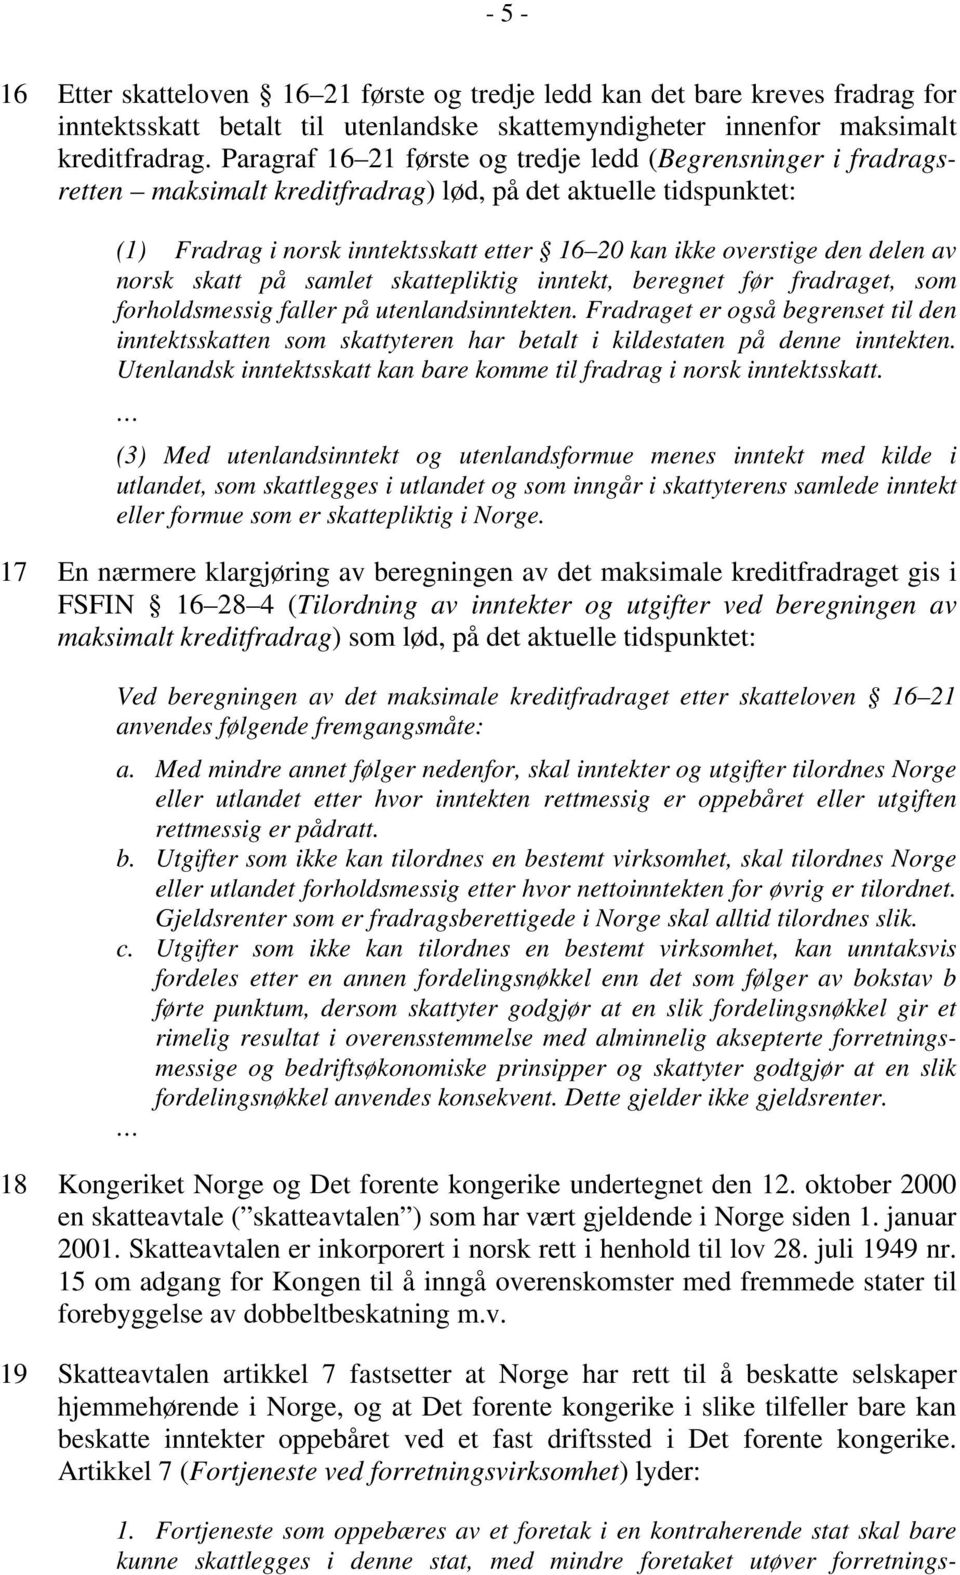 delen av norsk skatt på samlet skattepliktig inntekt, beregnet før fradraget, som forholdsmessig faller på utenlandsinntekten.